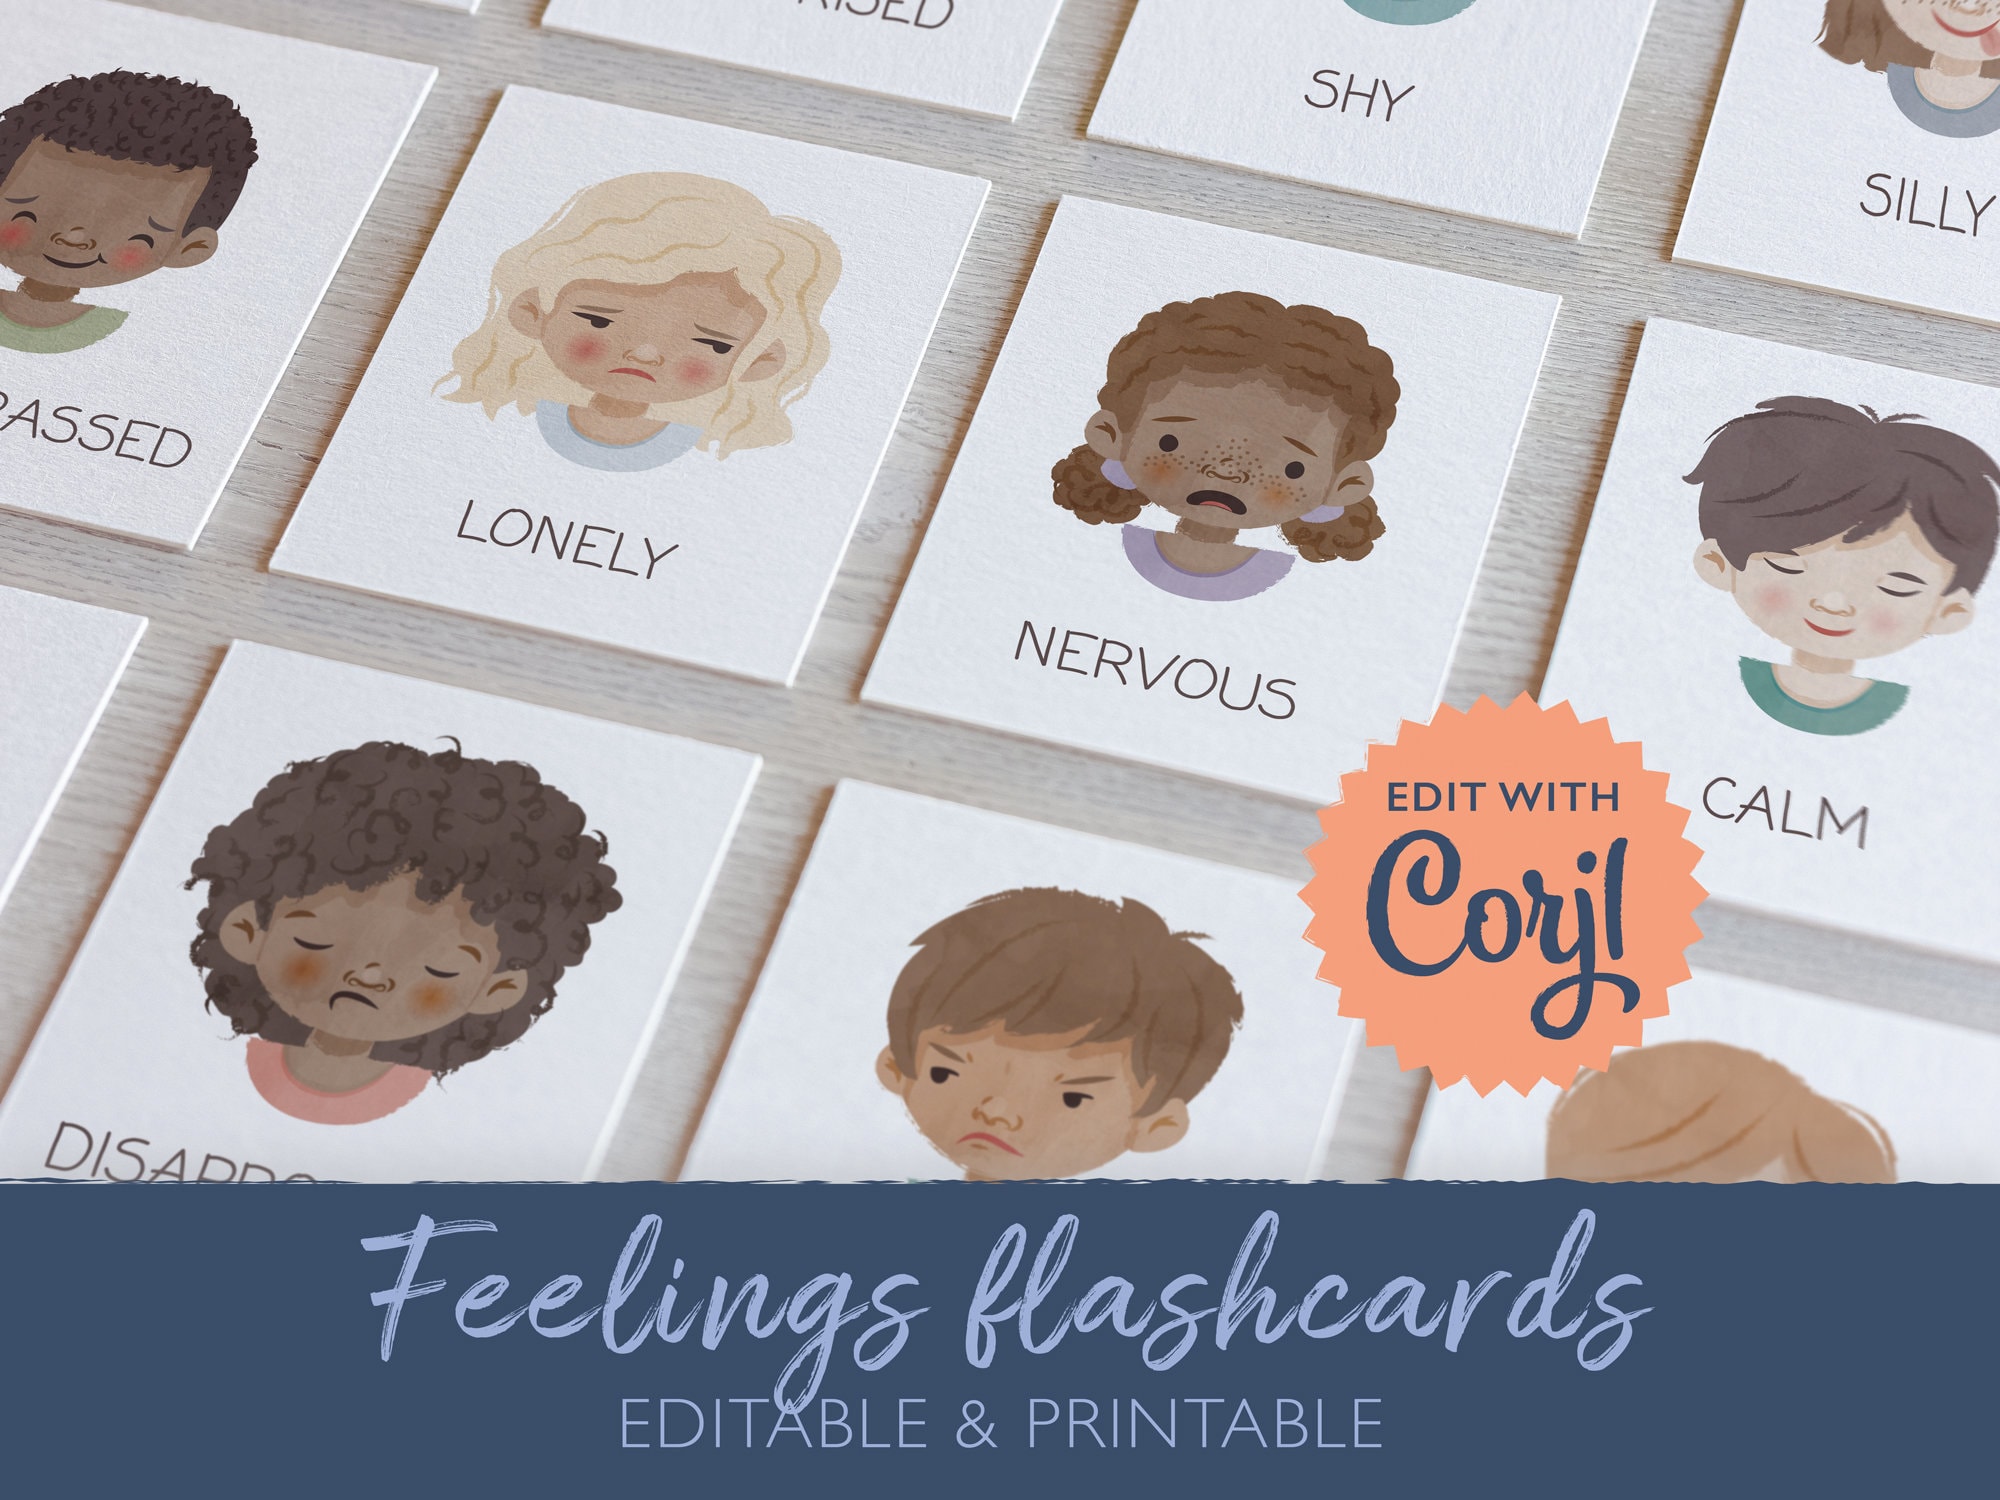 Flashcards Émotions et Actions Montessori Ou les Cartes Flash